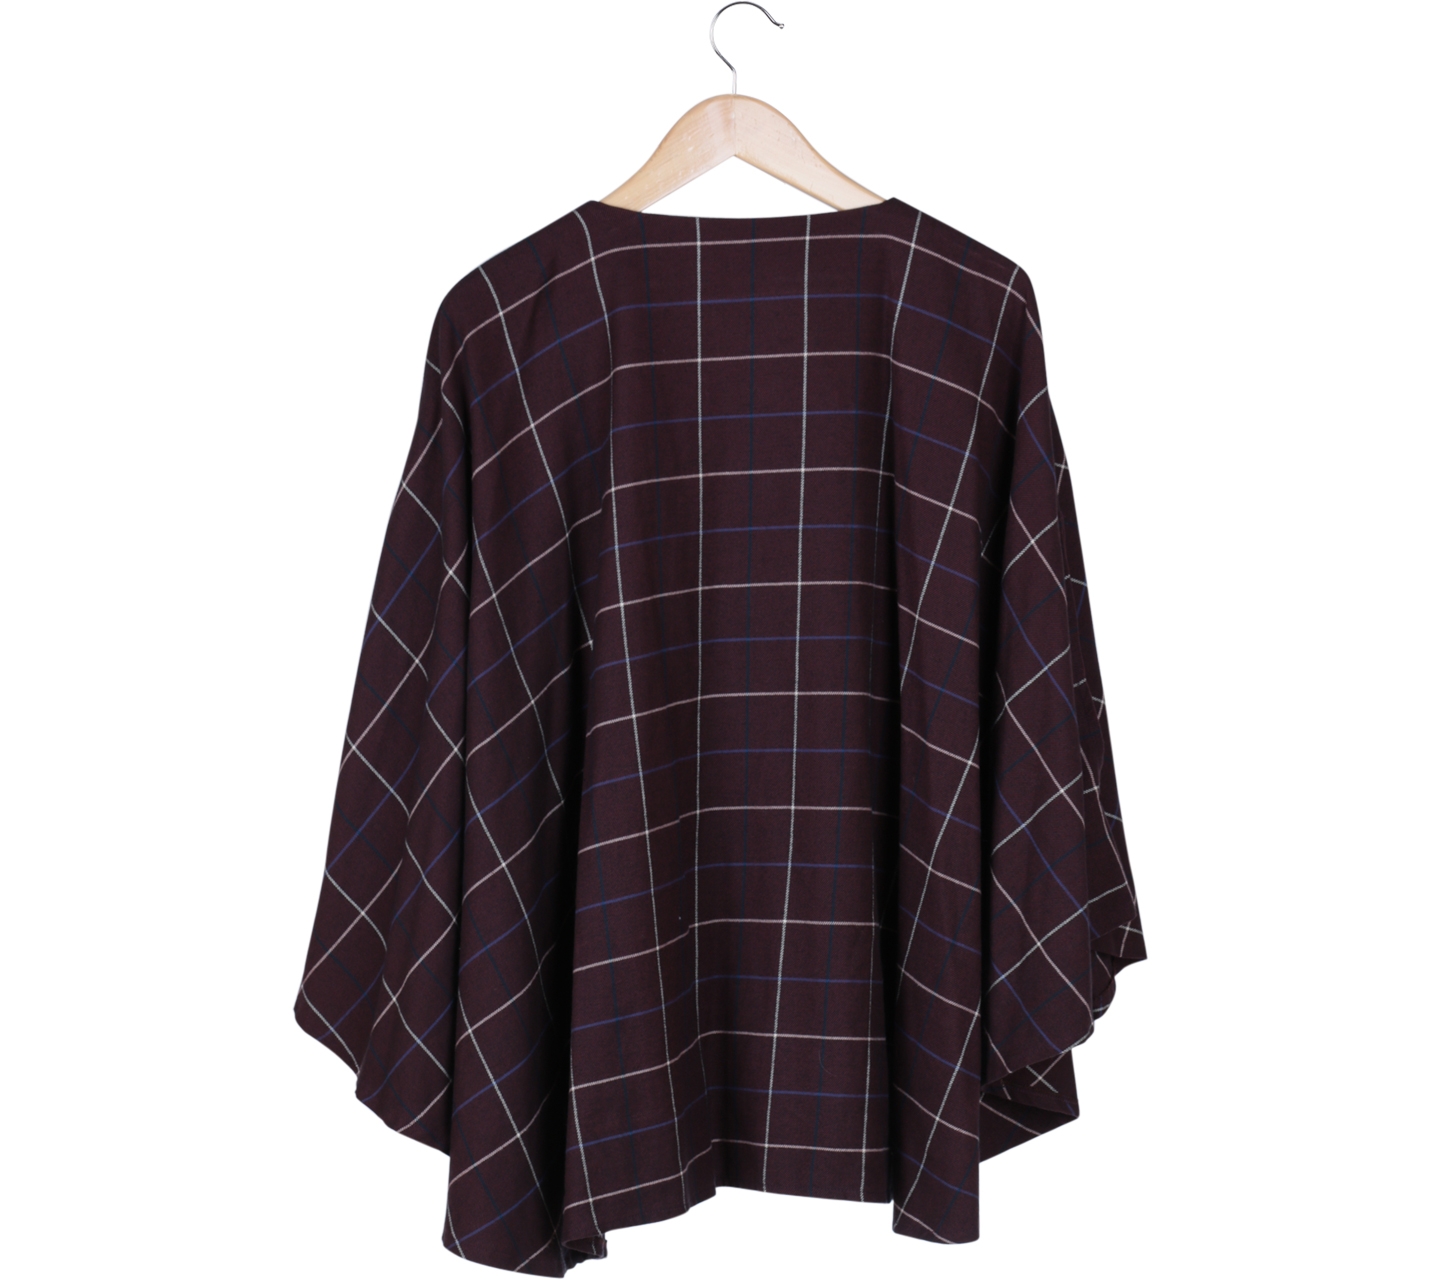 Meisje by Tantri Purple Square Patterned Outerwear